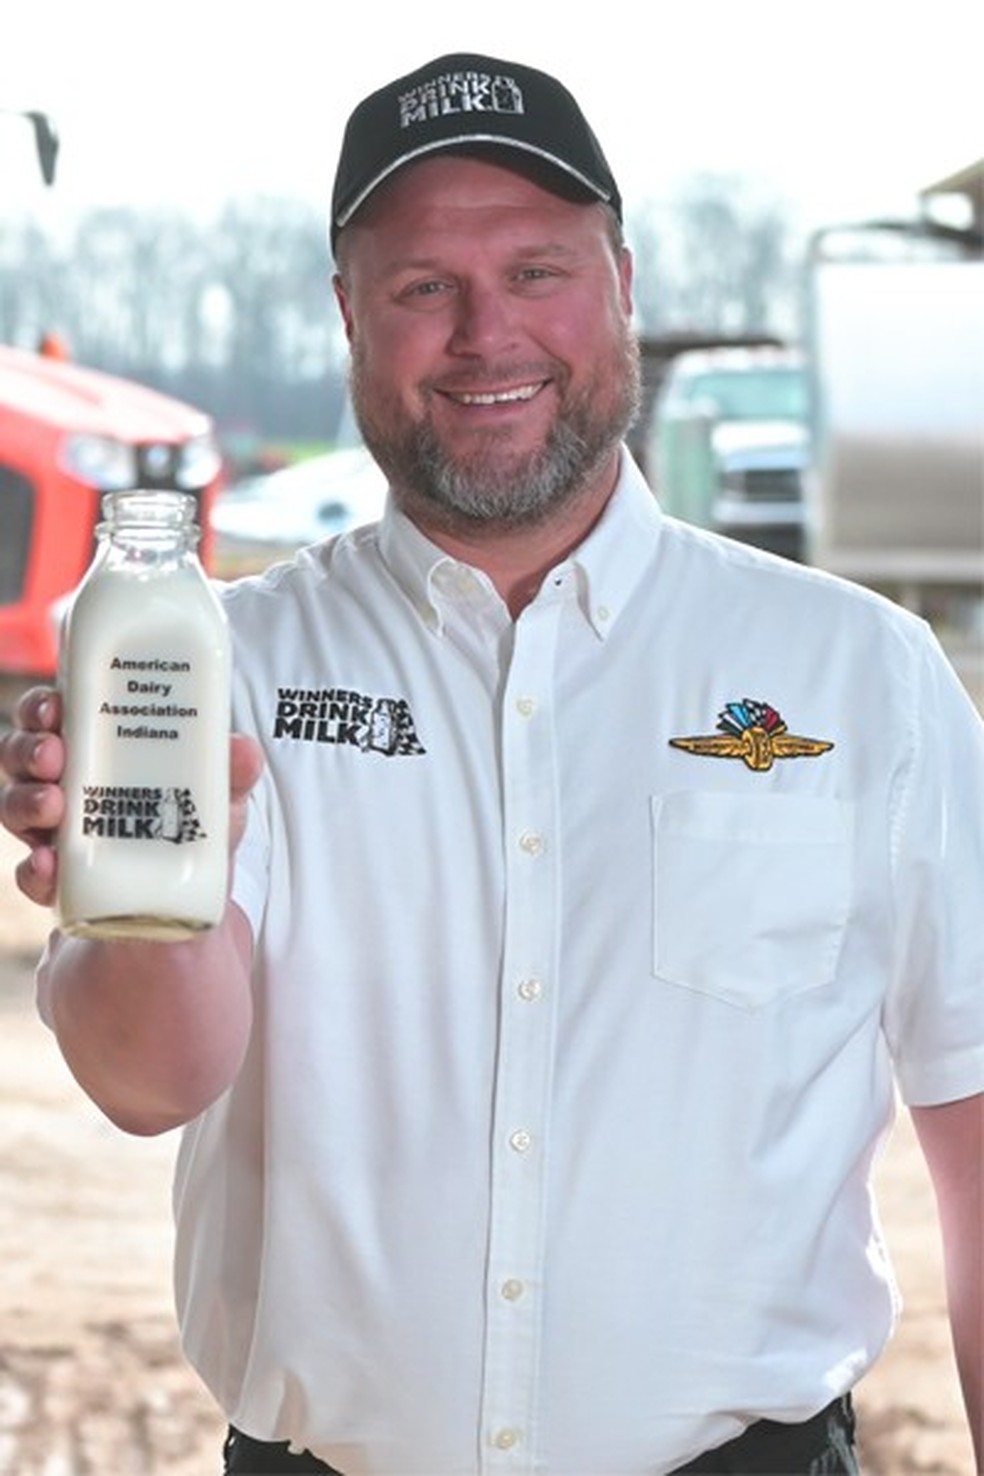 Kerry Estes vai entregar o leite da vitória ao campeão das 500 Milhas de Indianápolis de 2023 — Foto: American Dairy Farmers Indiana